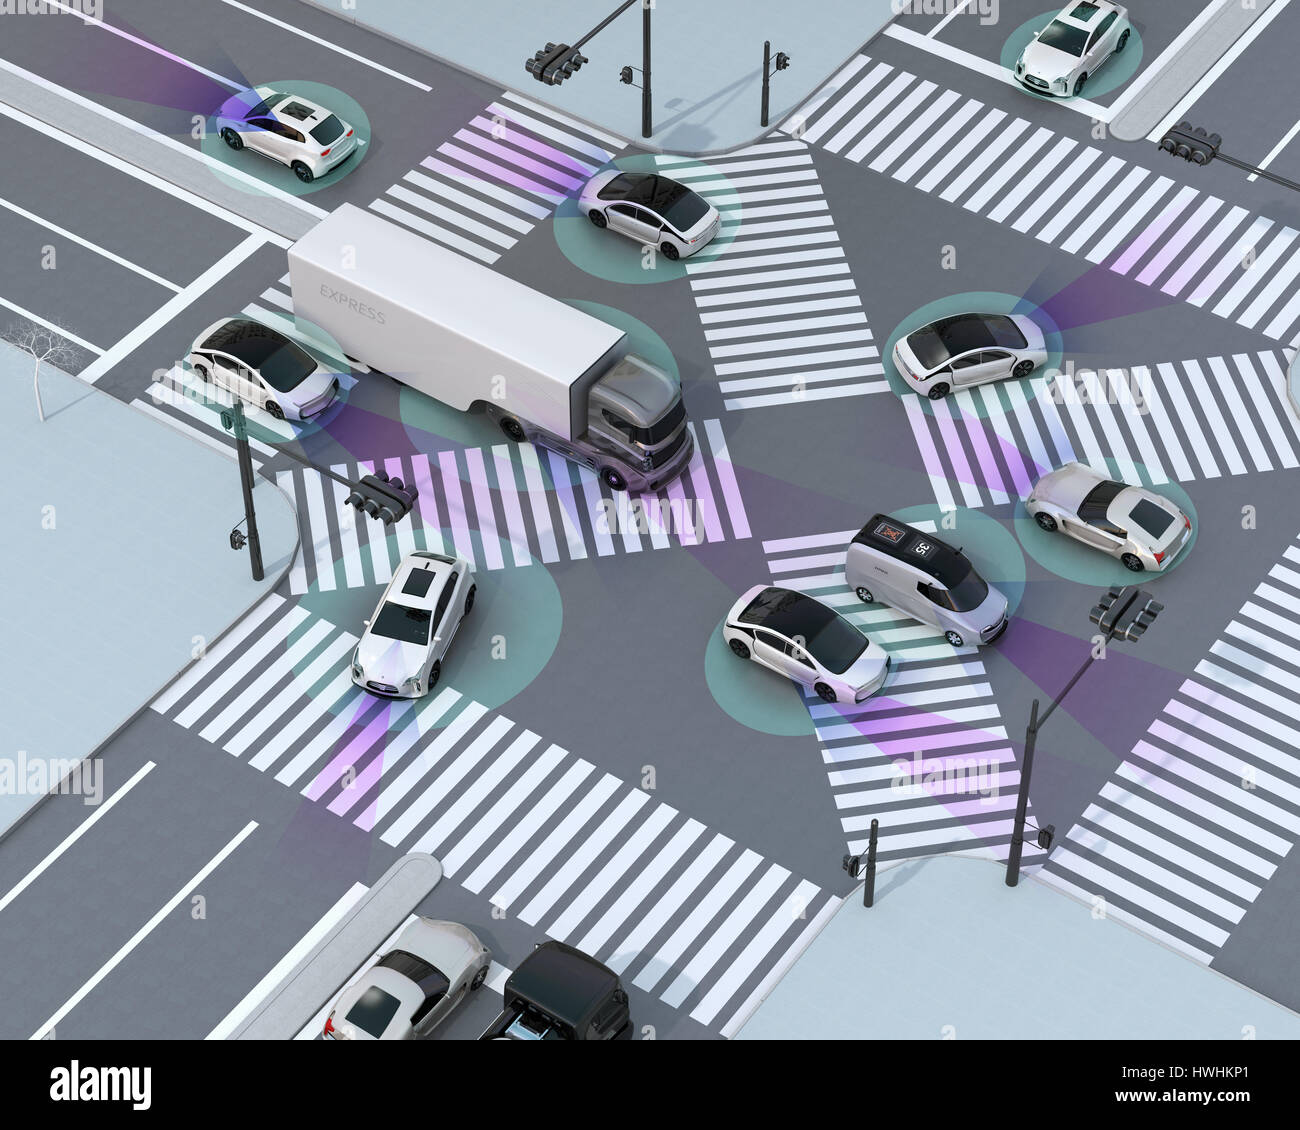 Reibungslosen Verkehr in Kreuzung. Konzept für autonome Technologie Vorteil. 3D-Rendering Bild. Stockfoto